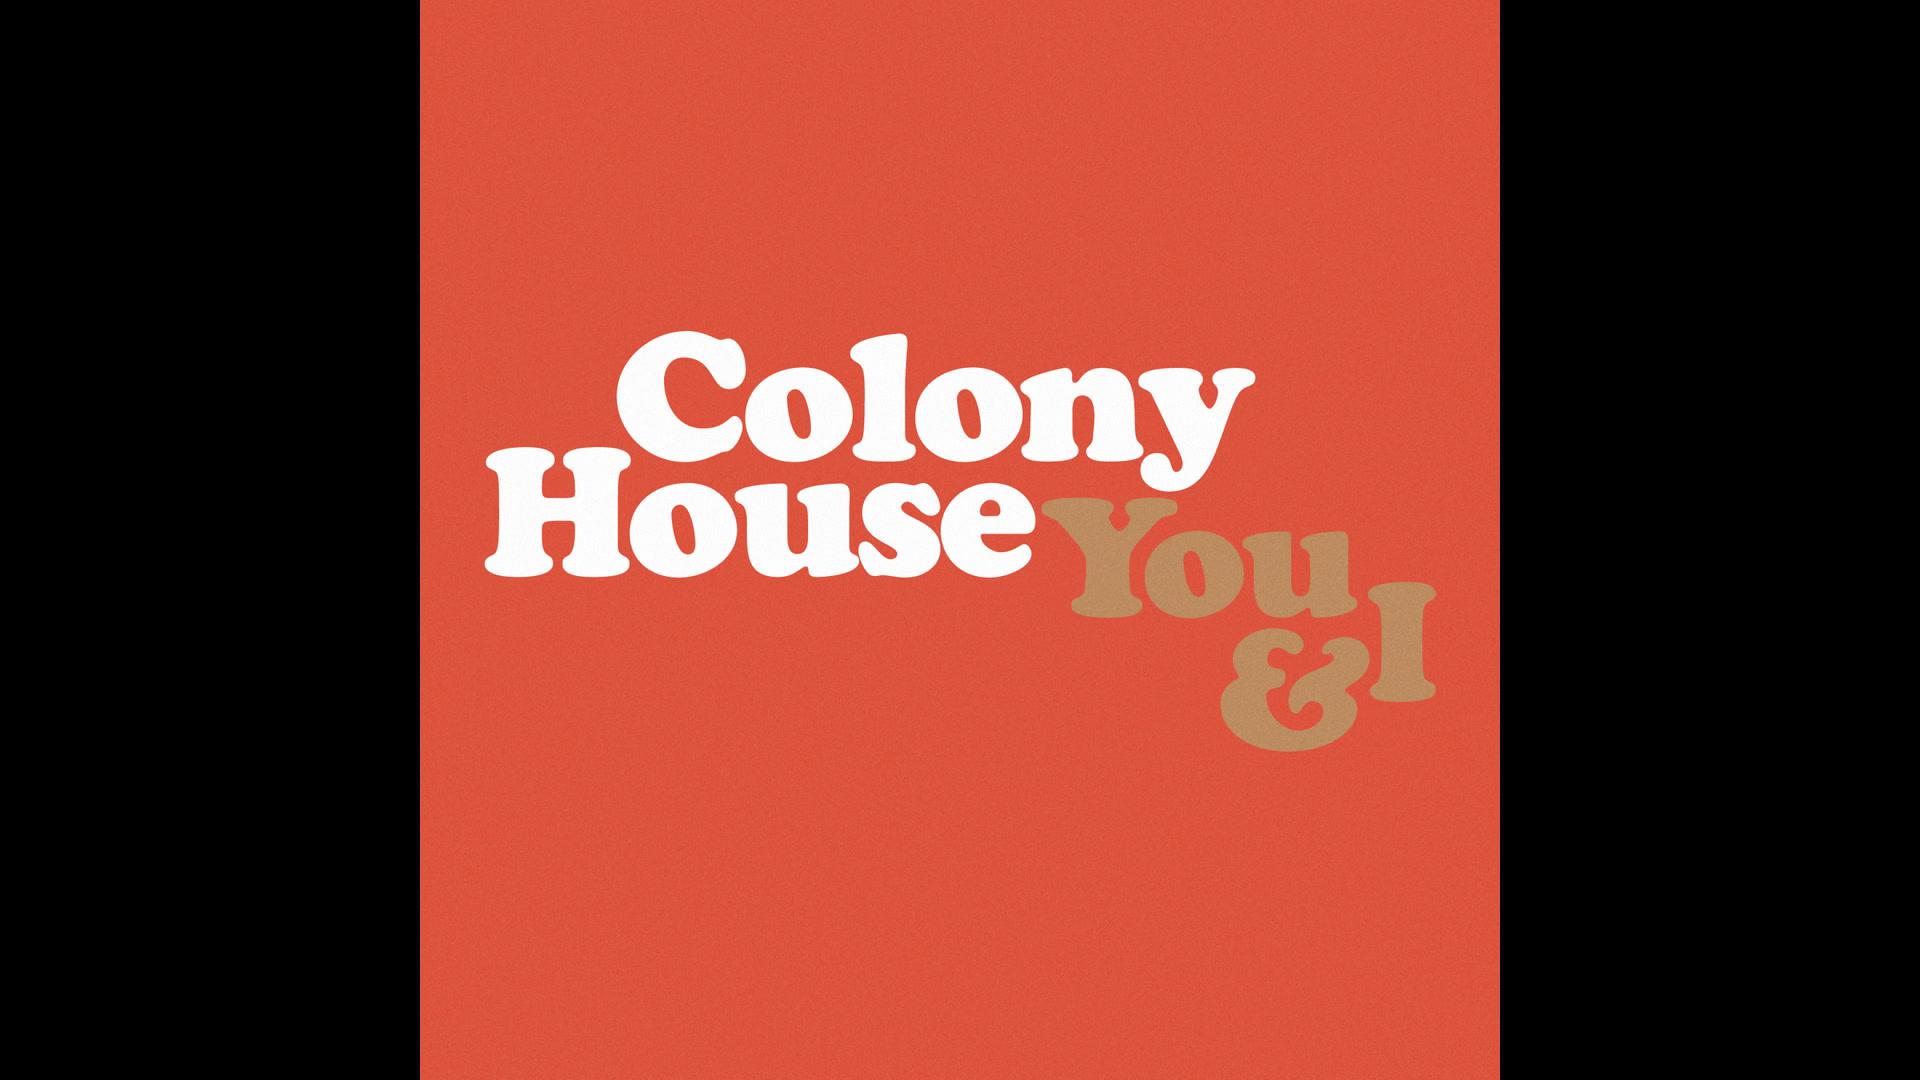 Colony House - You & I (Audio)